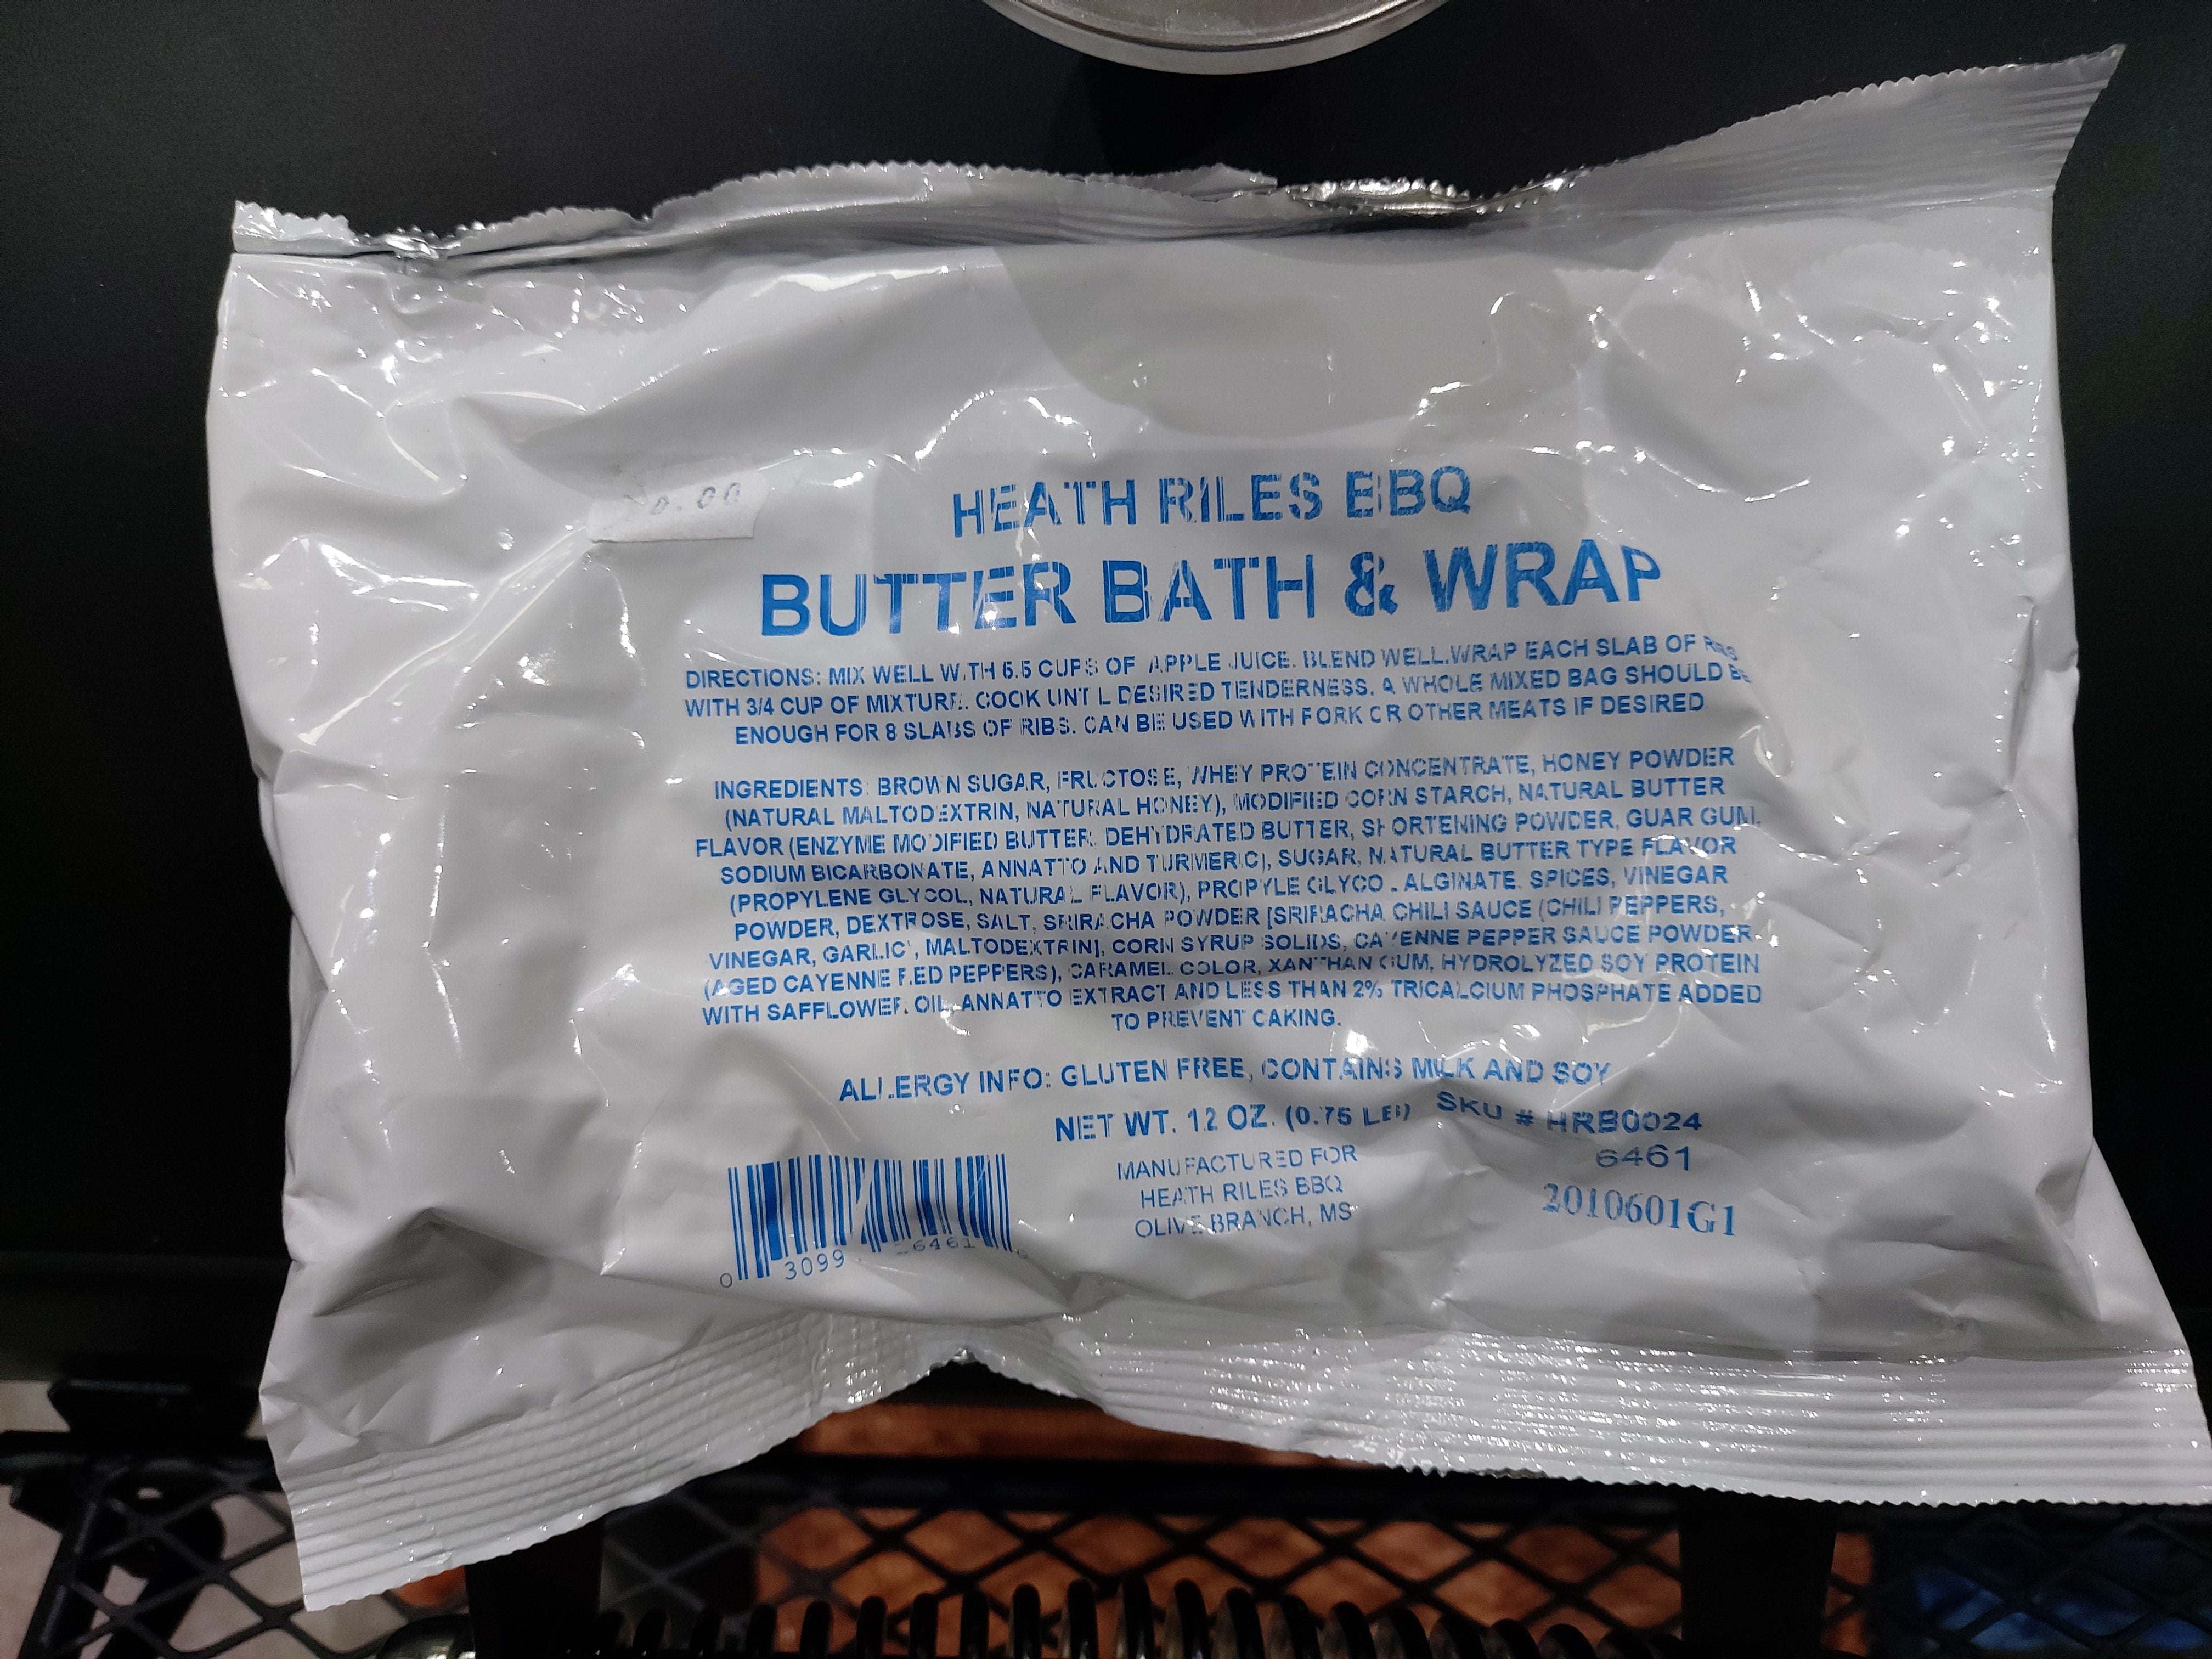 Butter Bath and Rib Wrap by Heath Riles